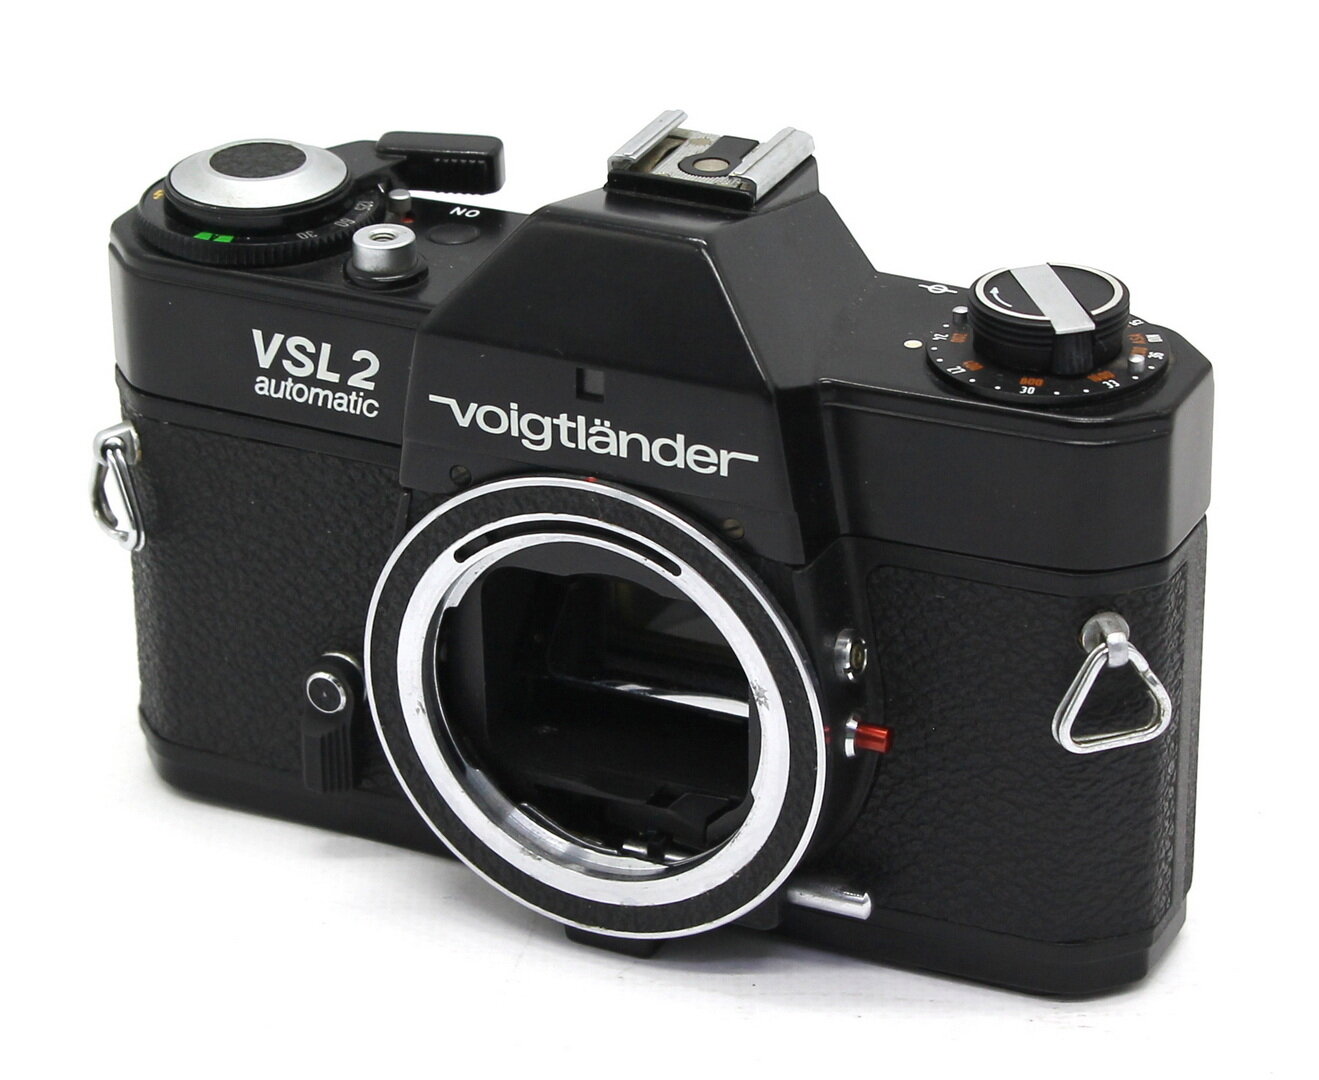 Voigtlander VSL 2 Automatic body